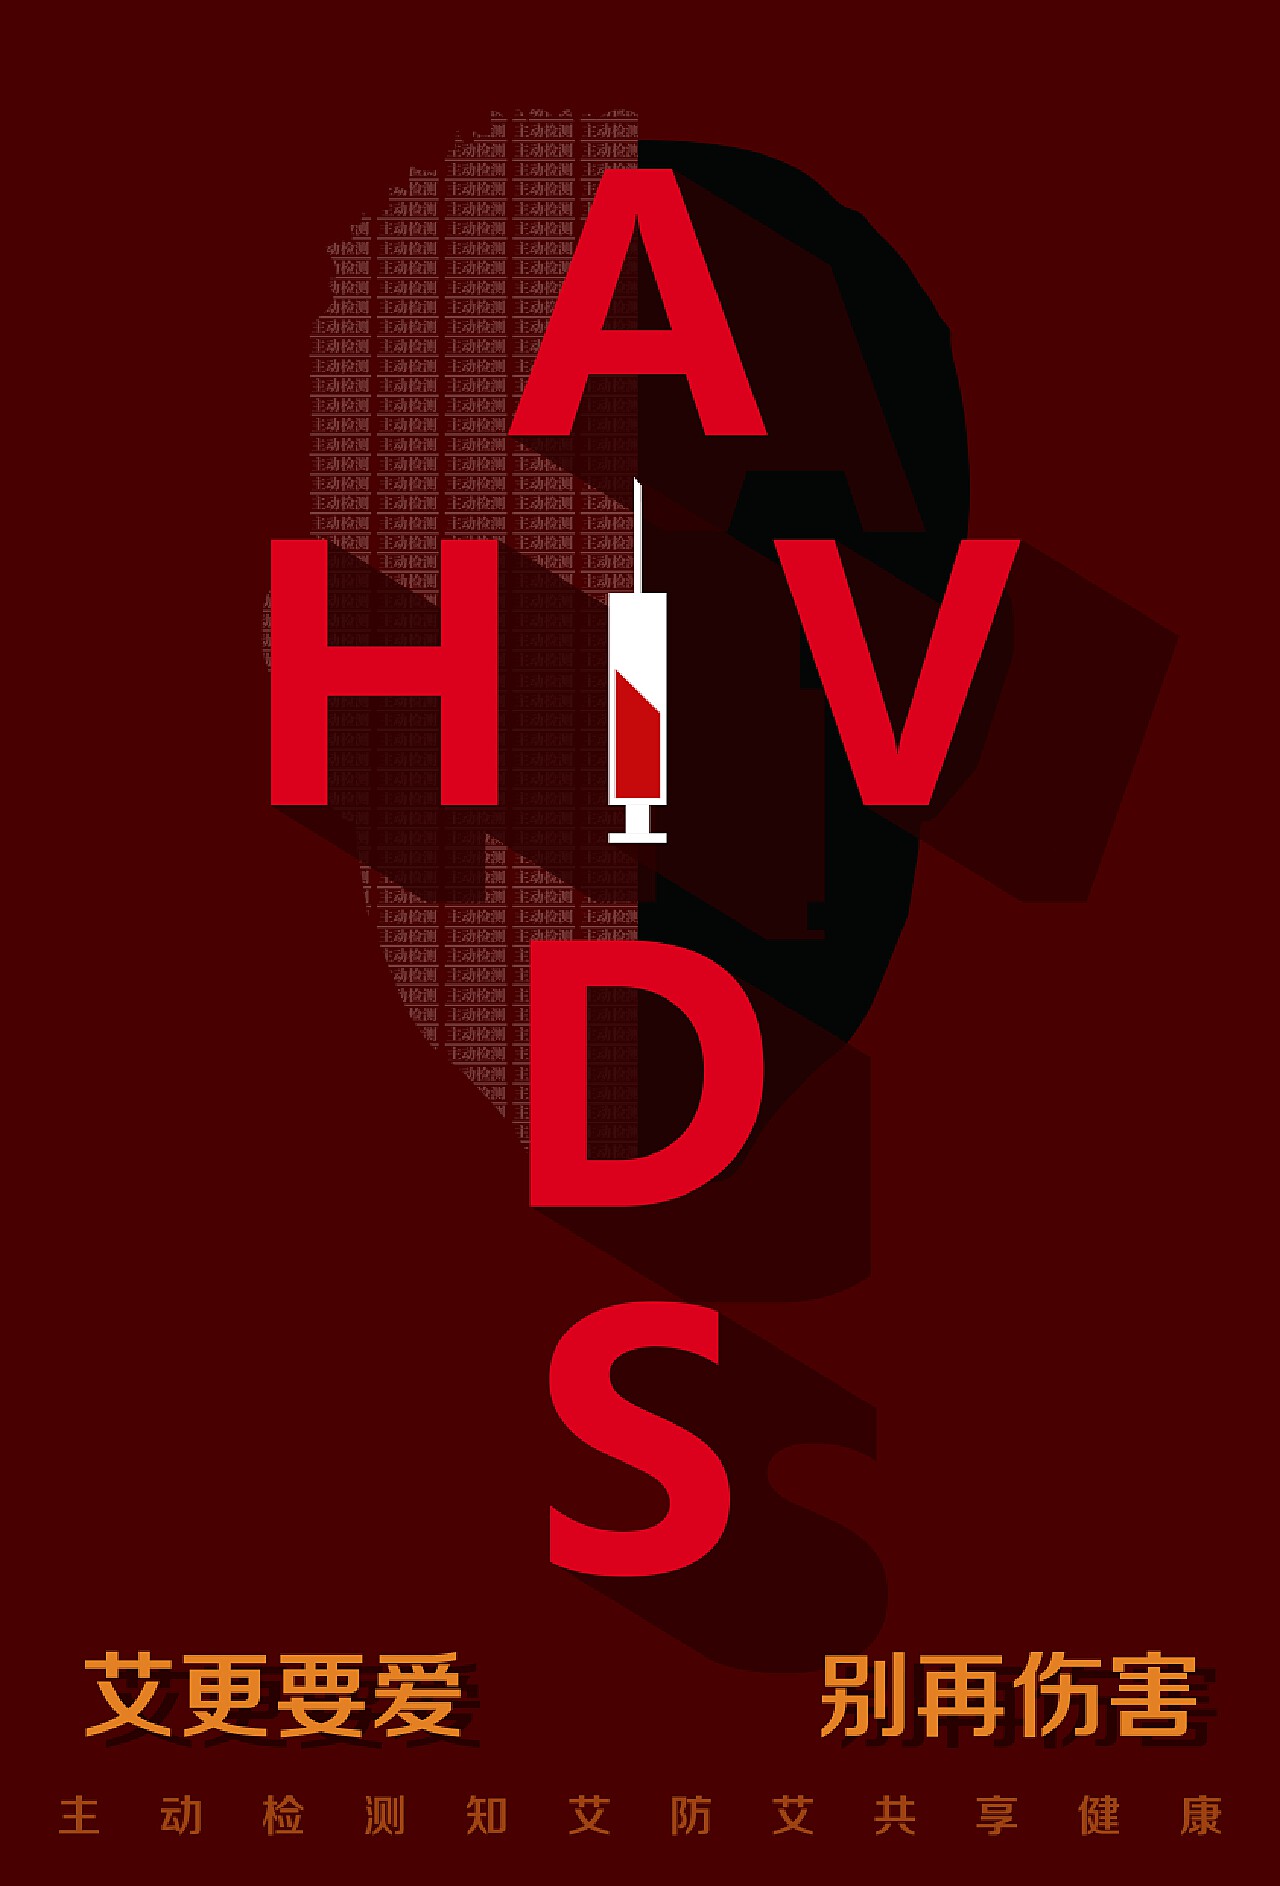 校医院举办“携手防疫抗艾，共担健康责任”2020年世界艾滋病日主题宣传活动